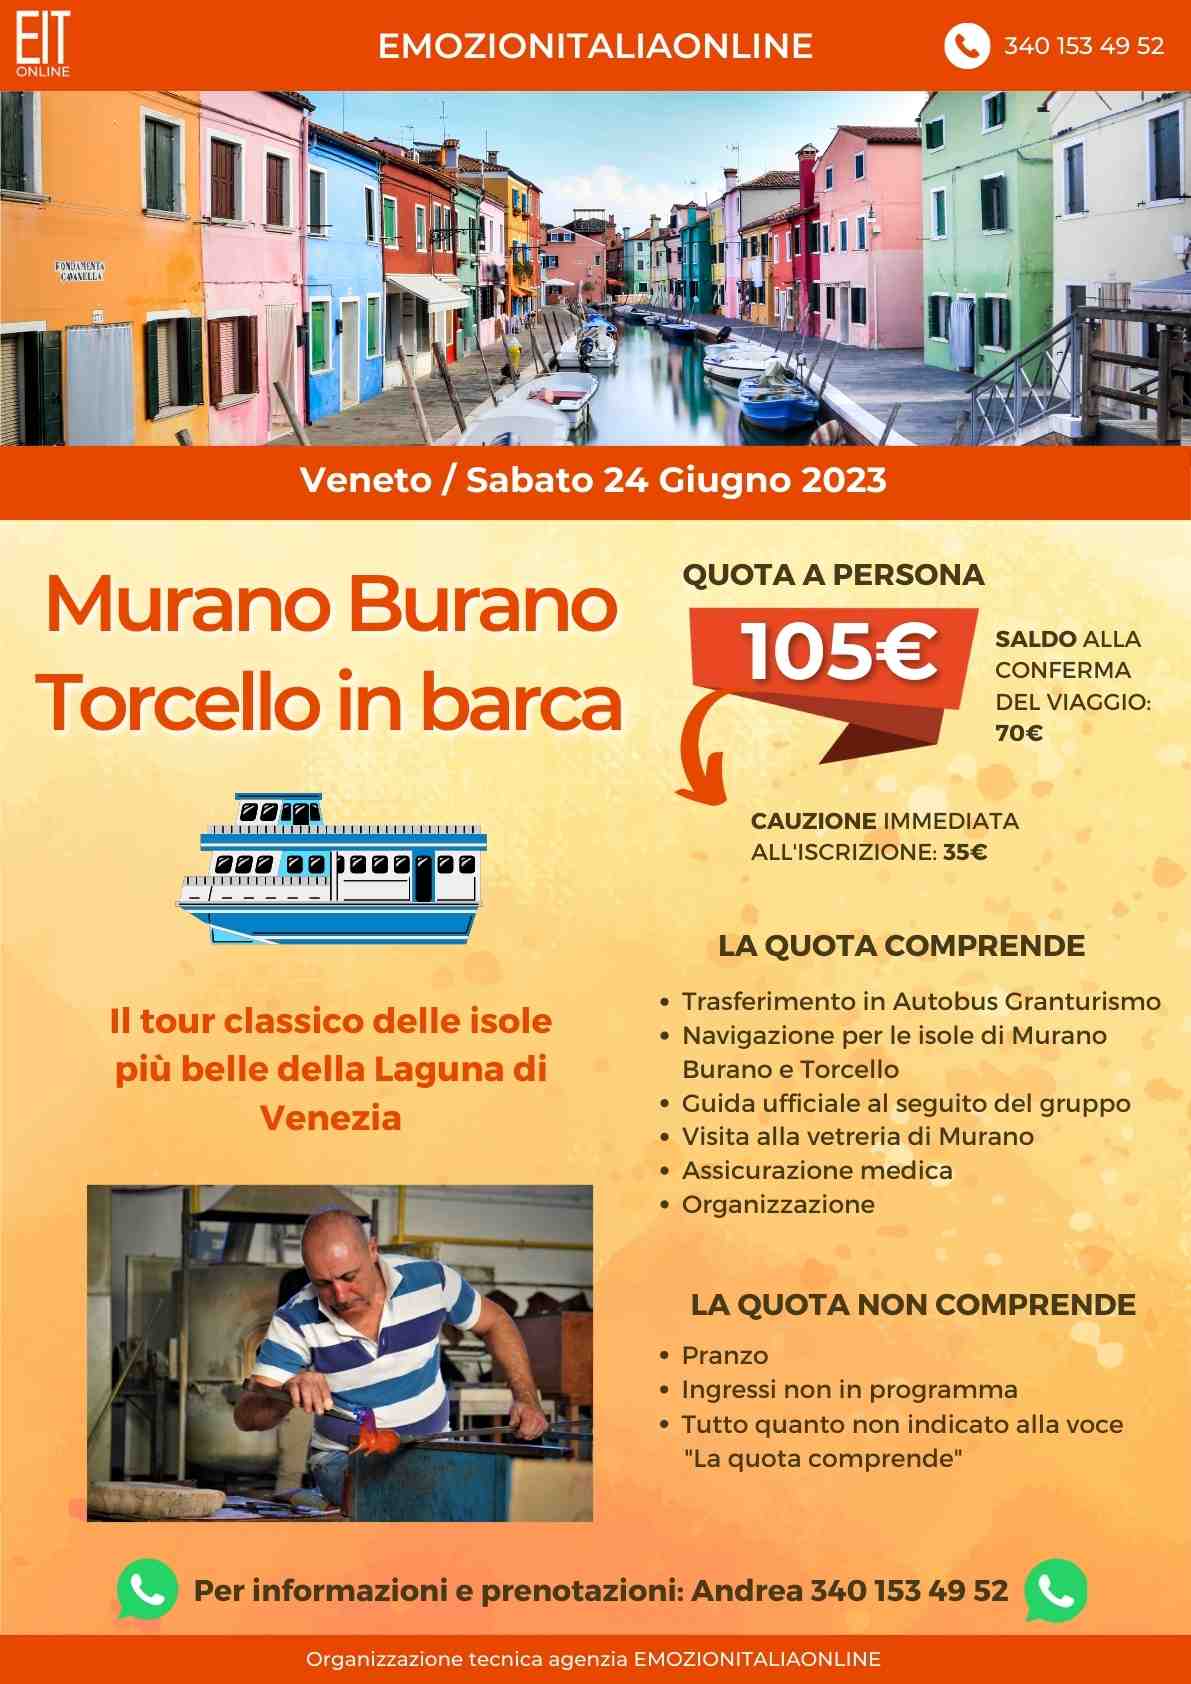 Murano Burano Torcello 24 giugno 2023